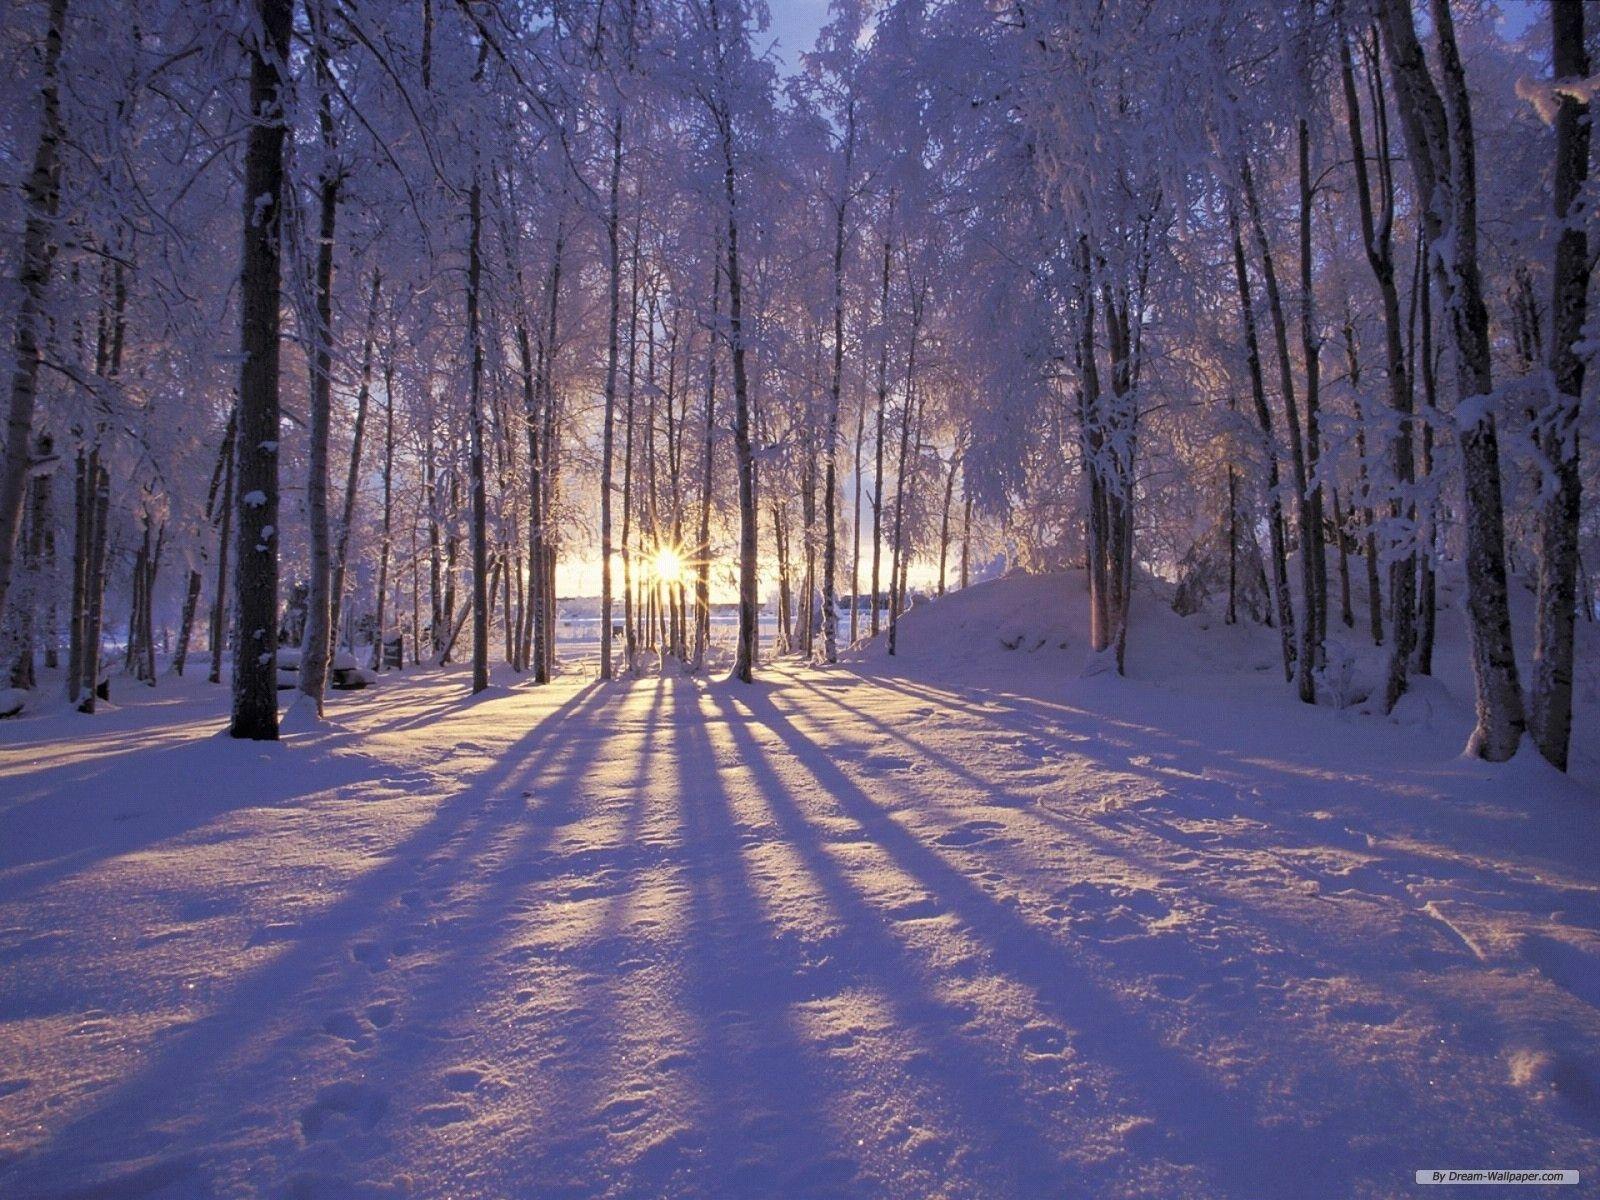 Winter Wonderland Background